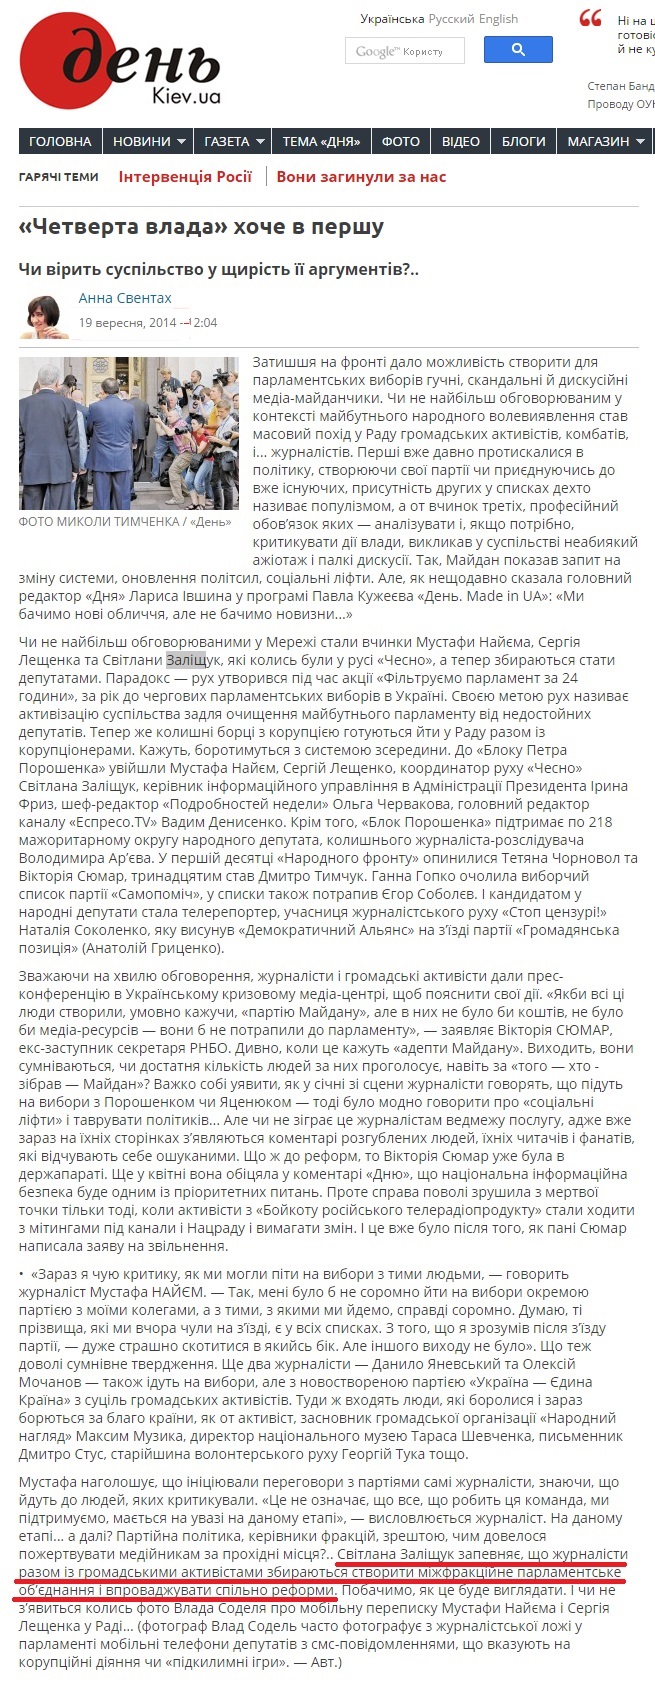 http://www.day.kiev.ua/uk/article/media/chetverta-vlada-hoche-v-pershu